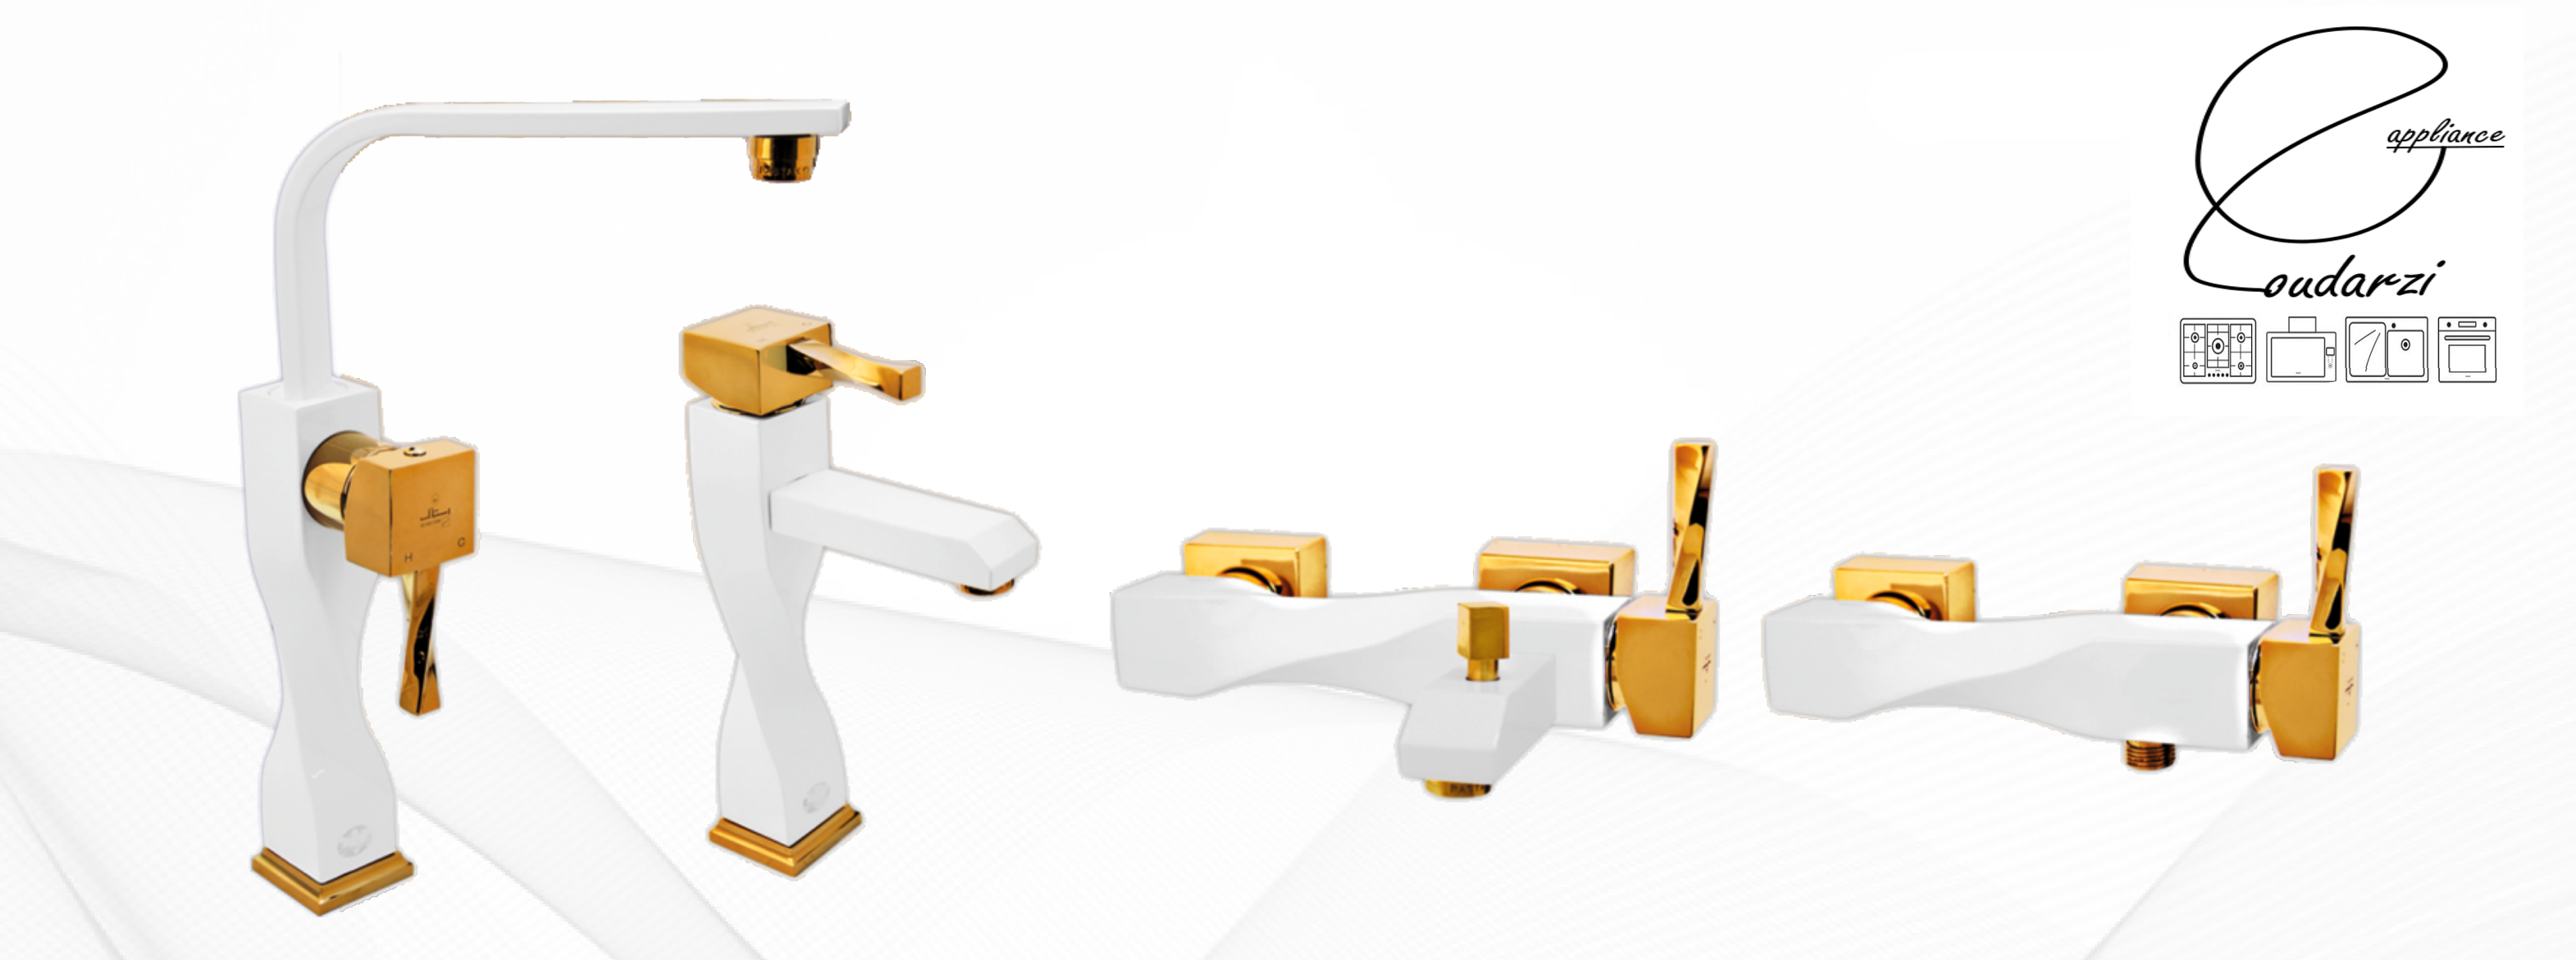 شیراآلات رستاک مدل پرنس سفید طلایی(ارسال رایگان)